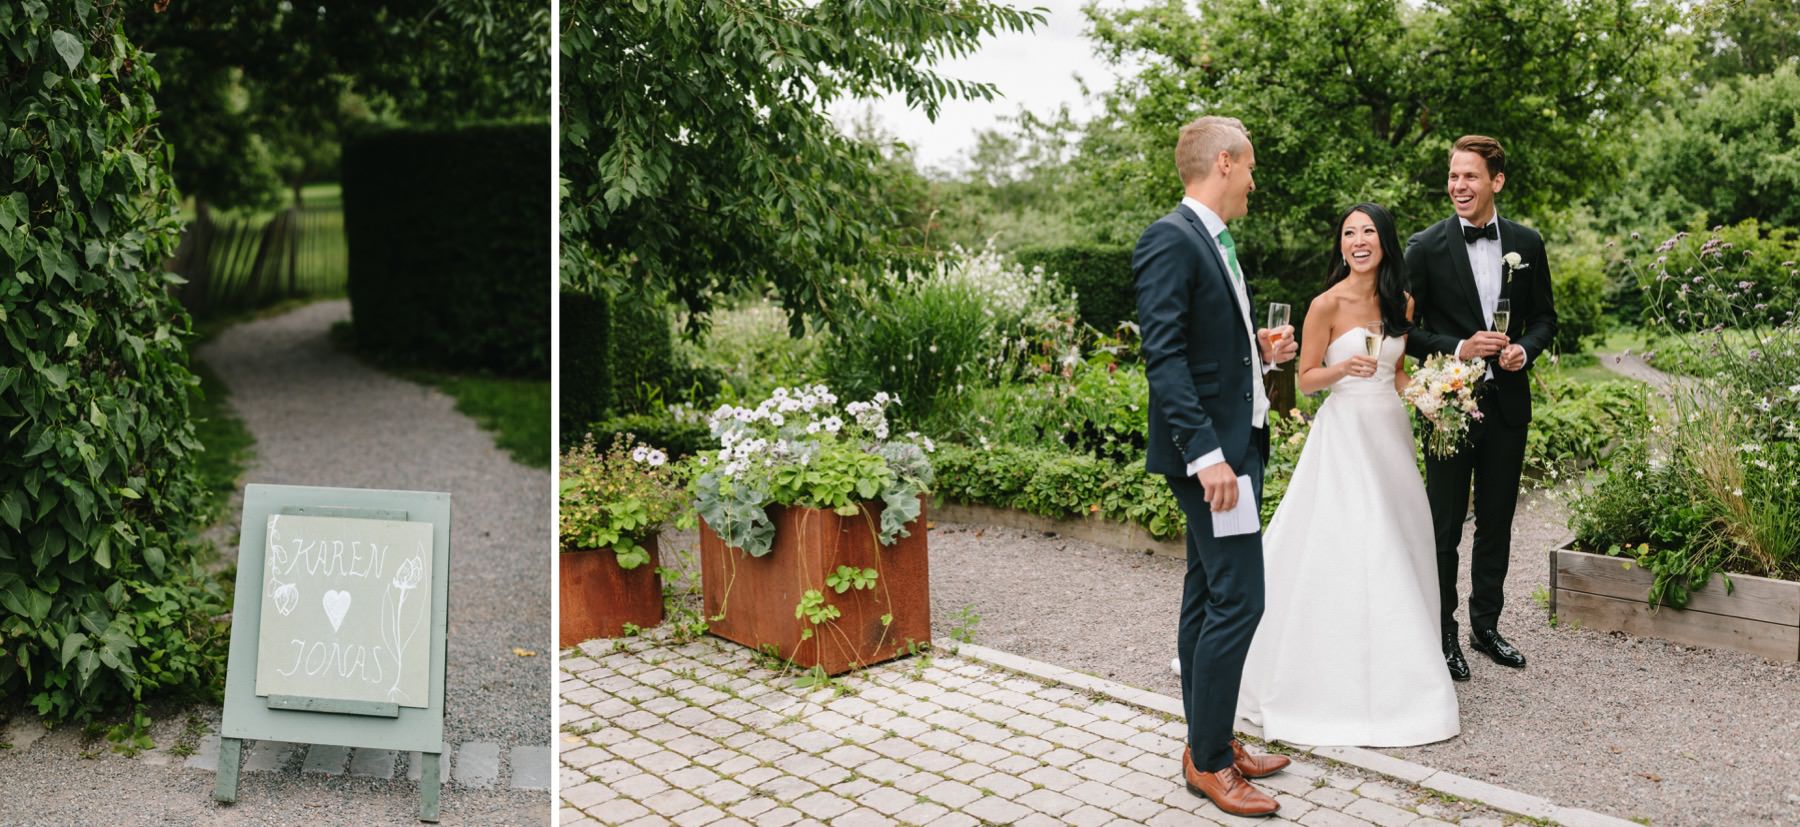 destination wedding in Sweden